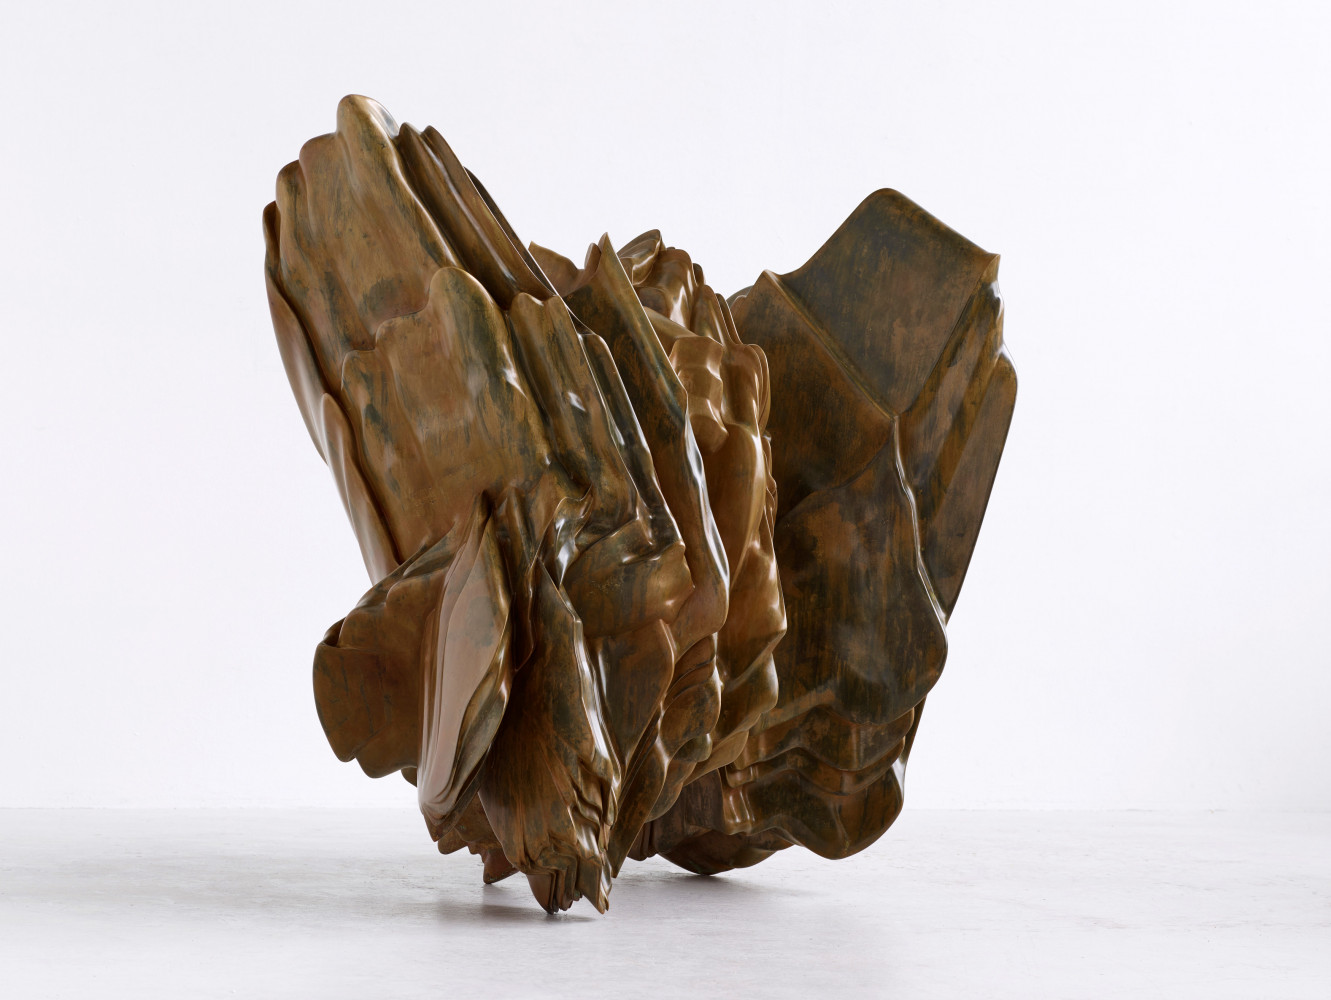 Tony Cragg, ‘Karst’, 2020, Bronze